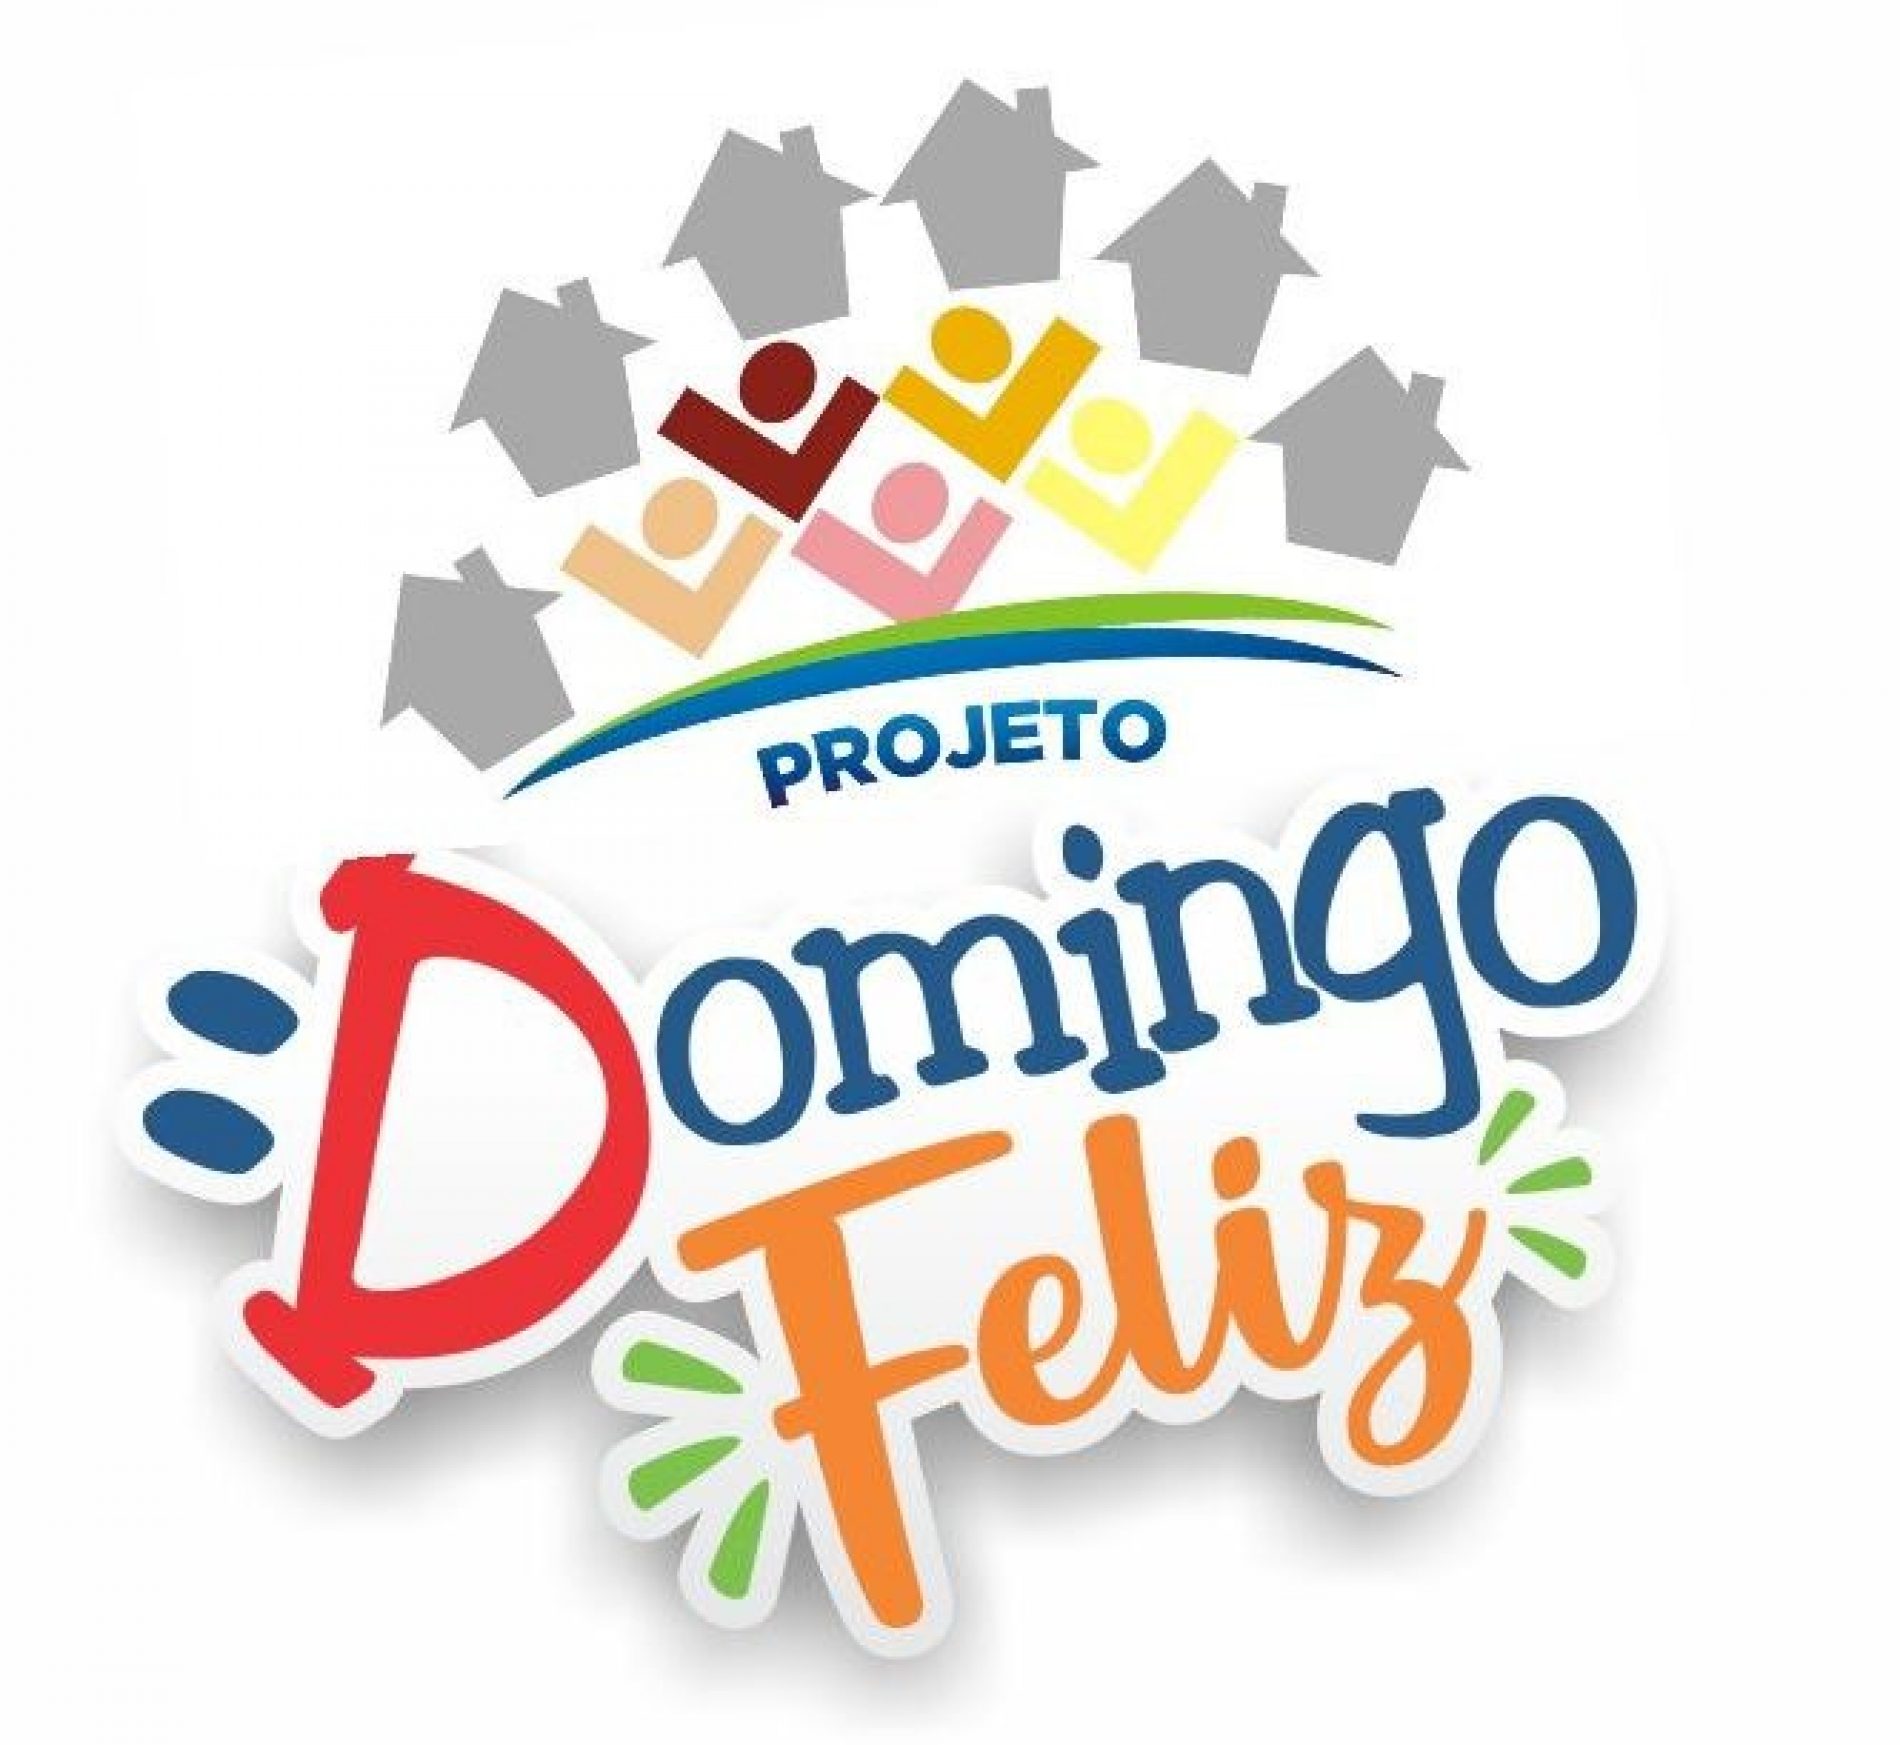 BARRETOS: Projeto DOMINGO FELIZ foi lançado oficialmente e fez sucesso no bairro Lêda Amêndola